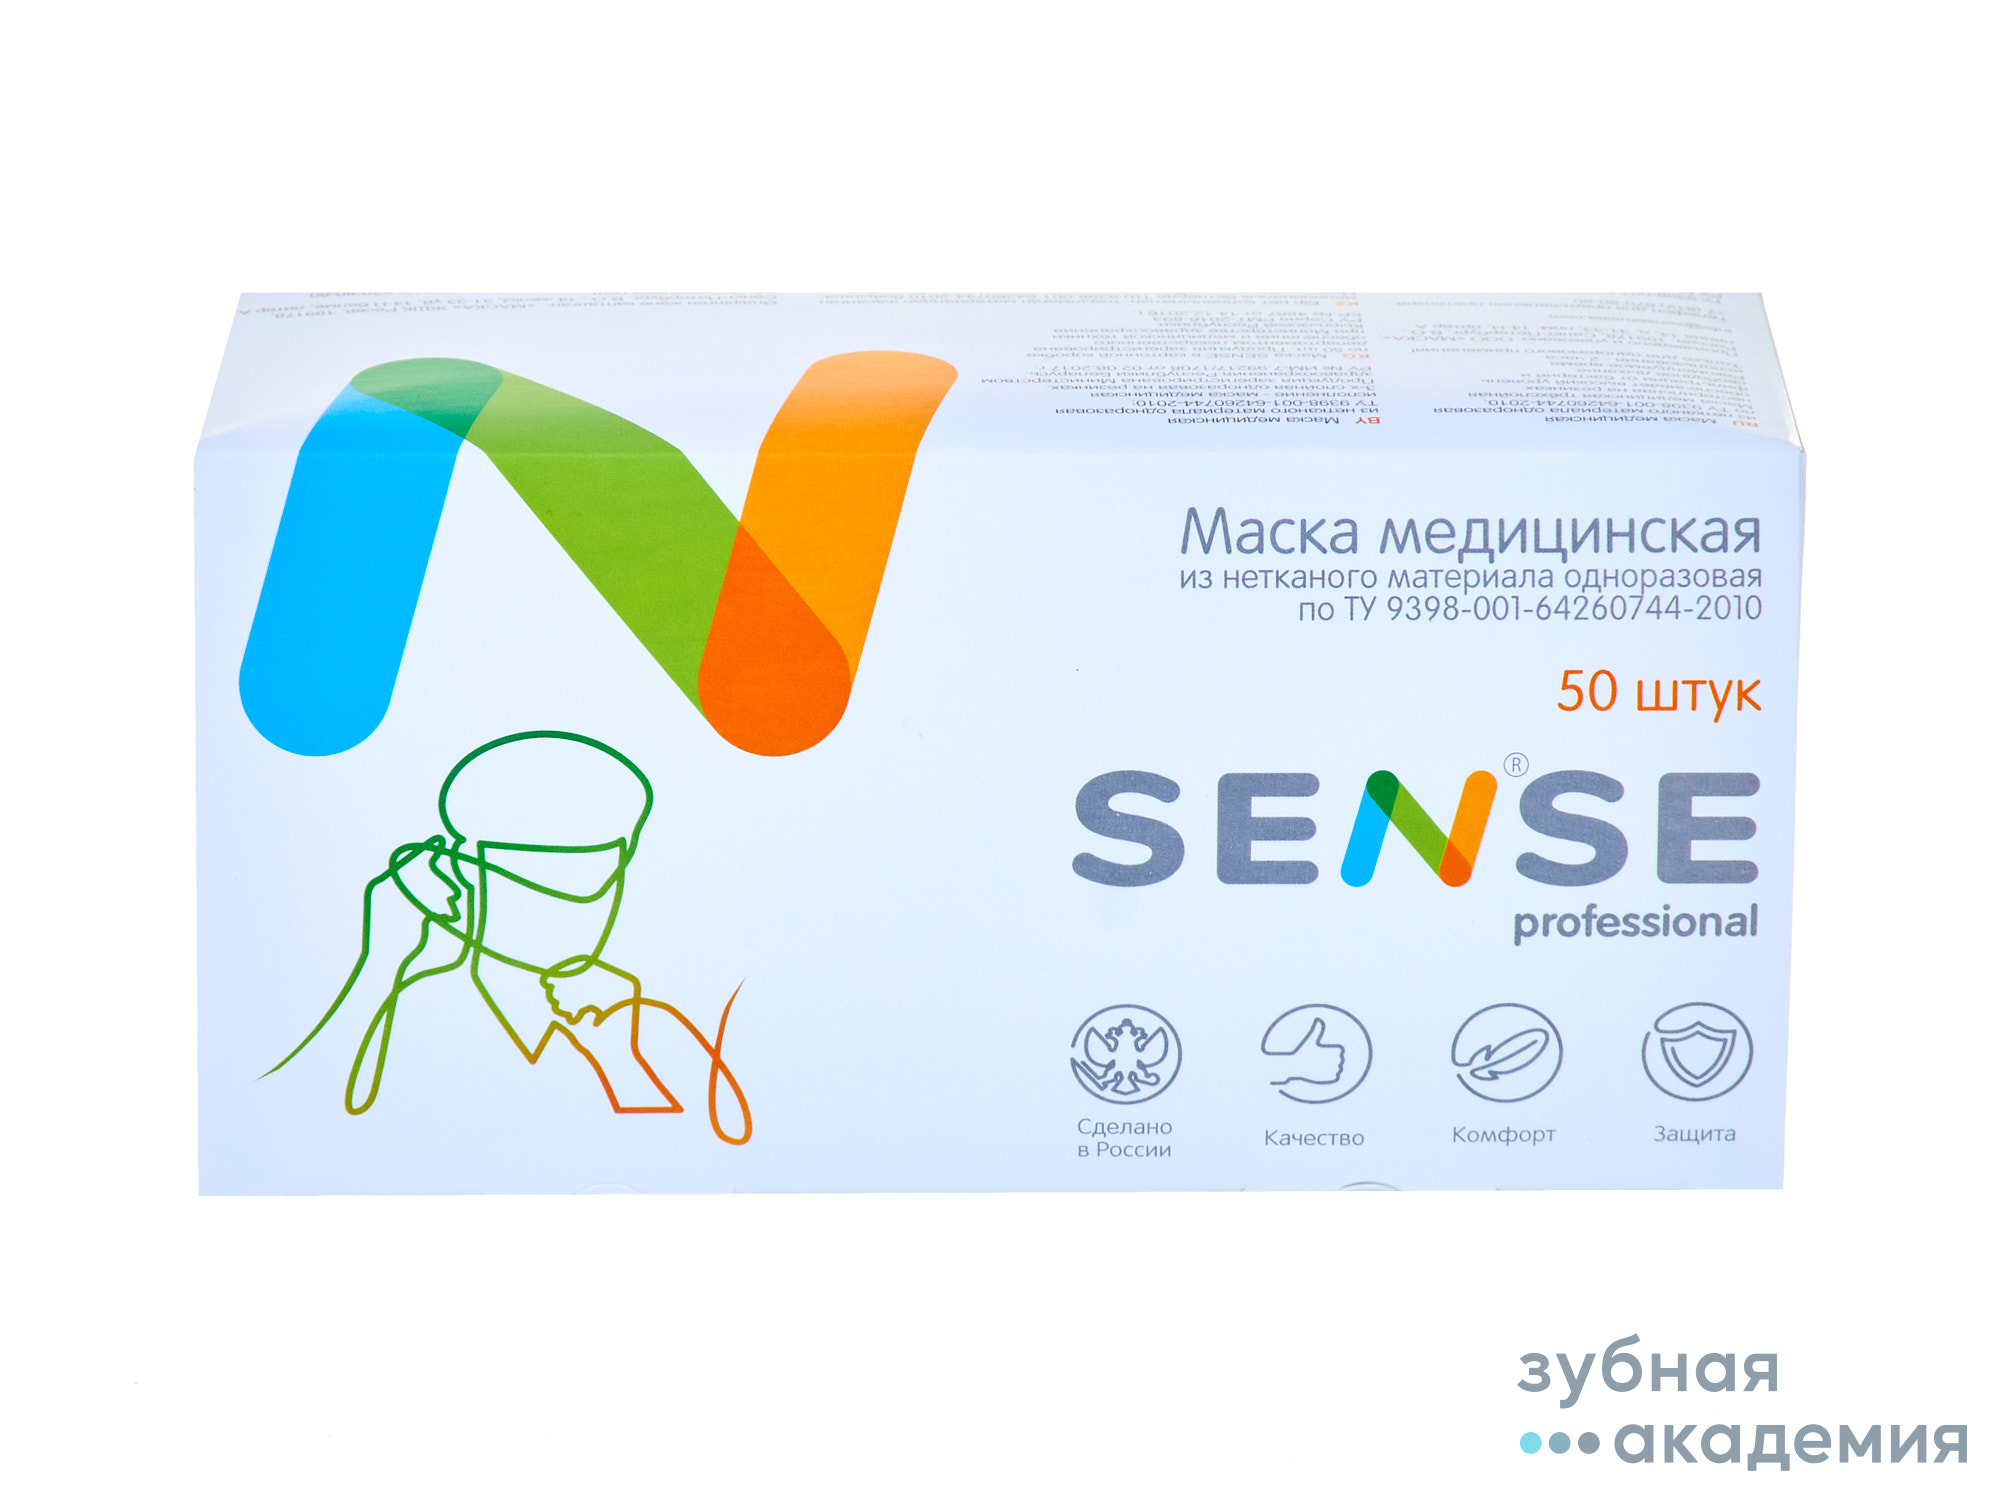 Маски  трехслойные  Sense белые упаковка 50 шт /ООО Маска/ Россия